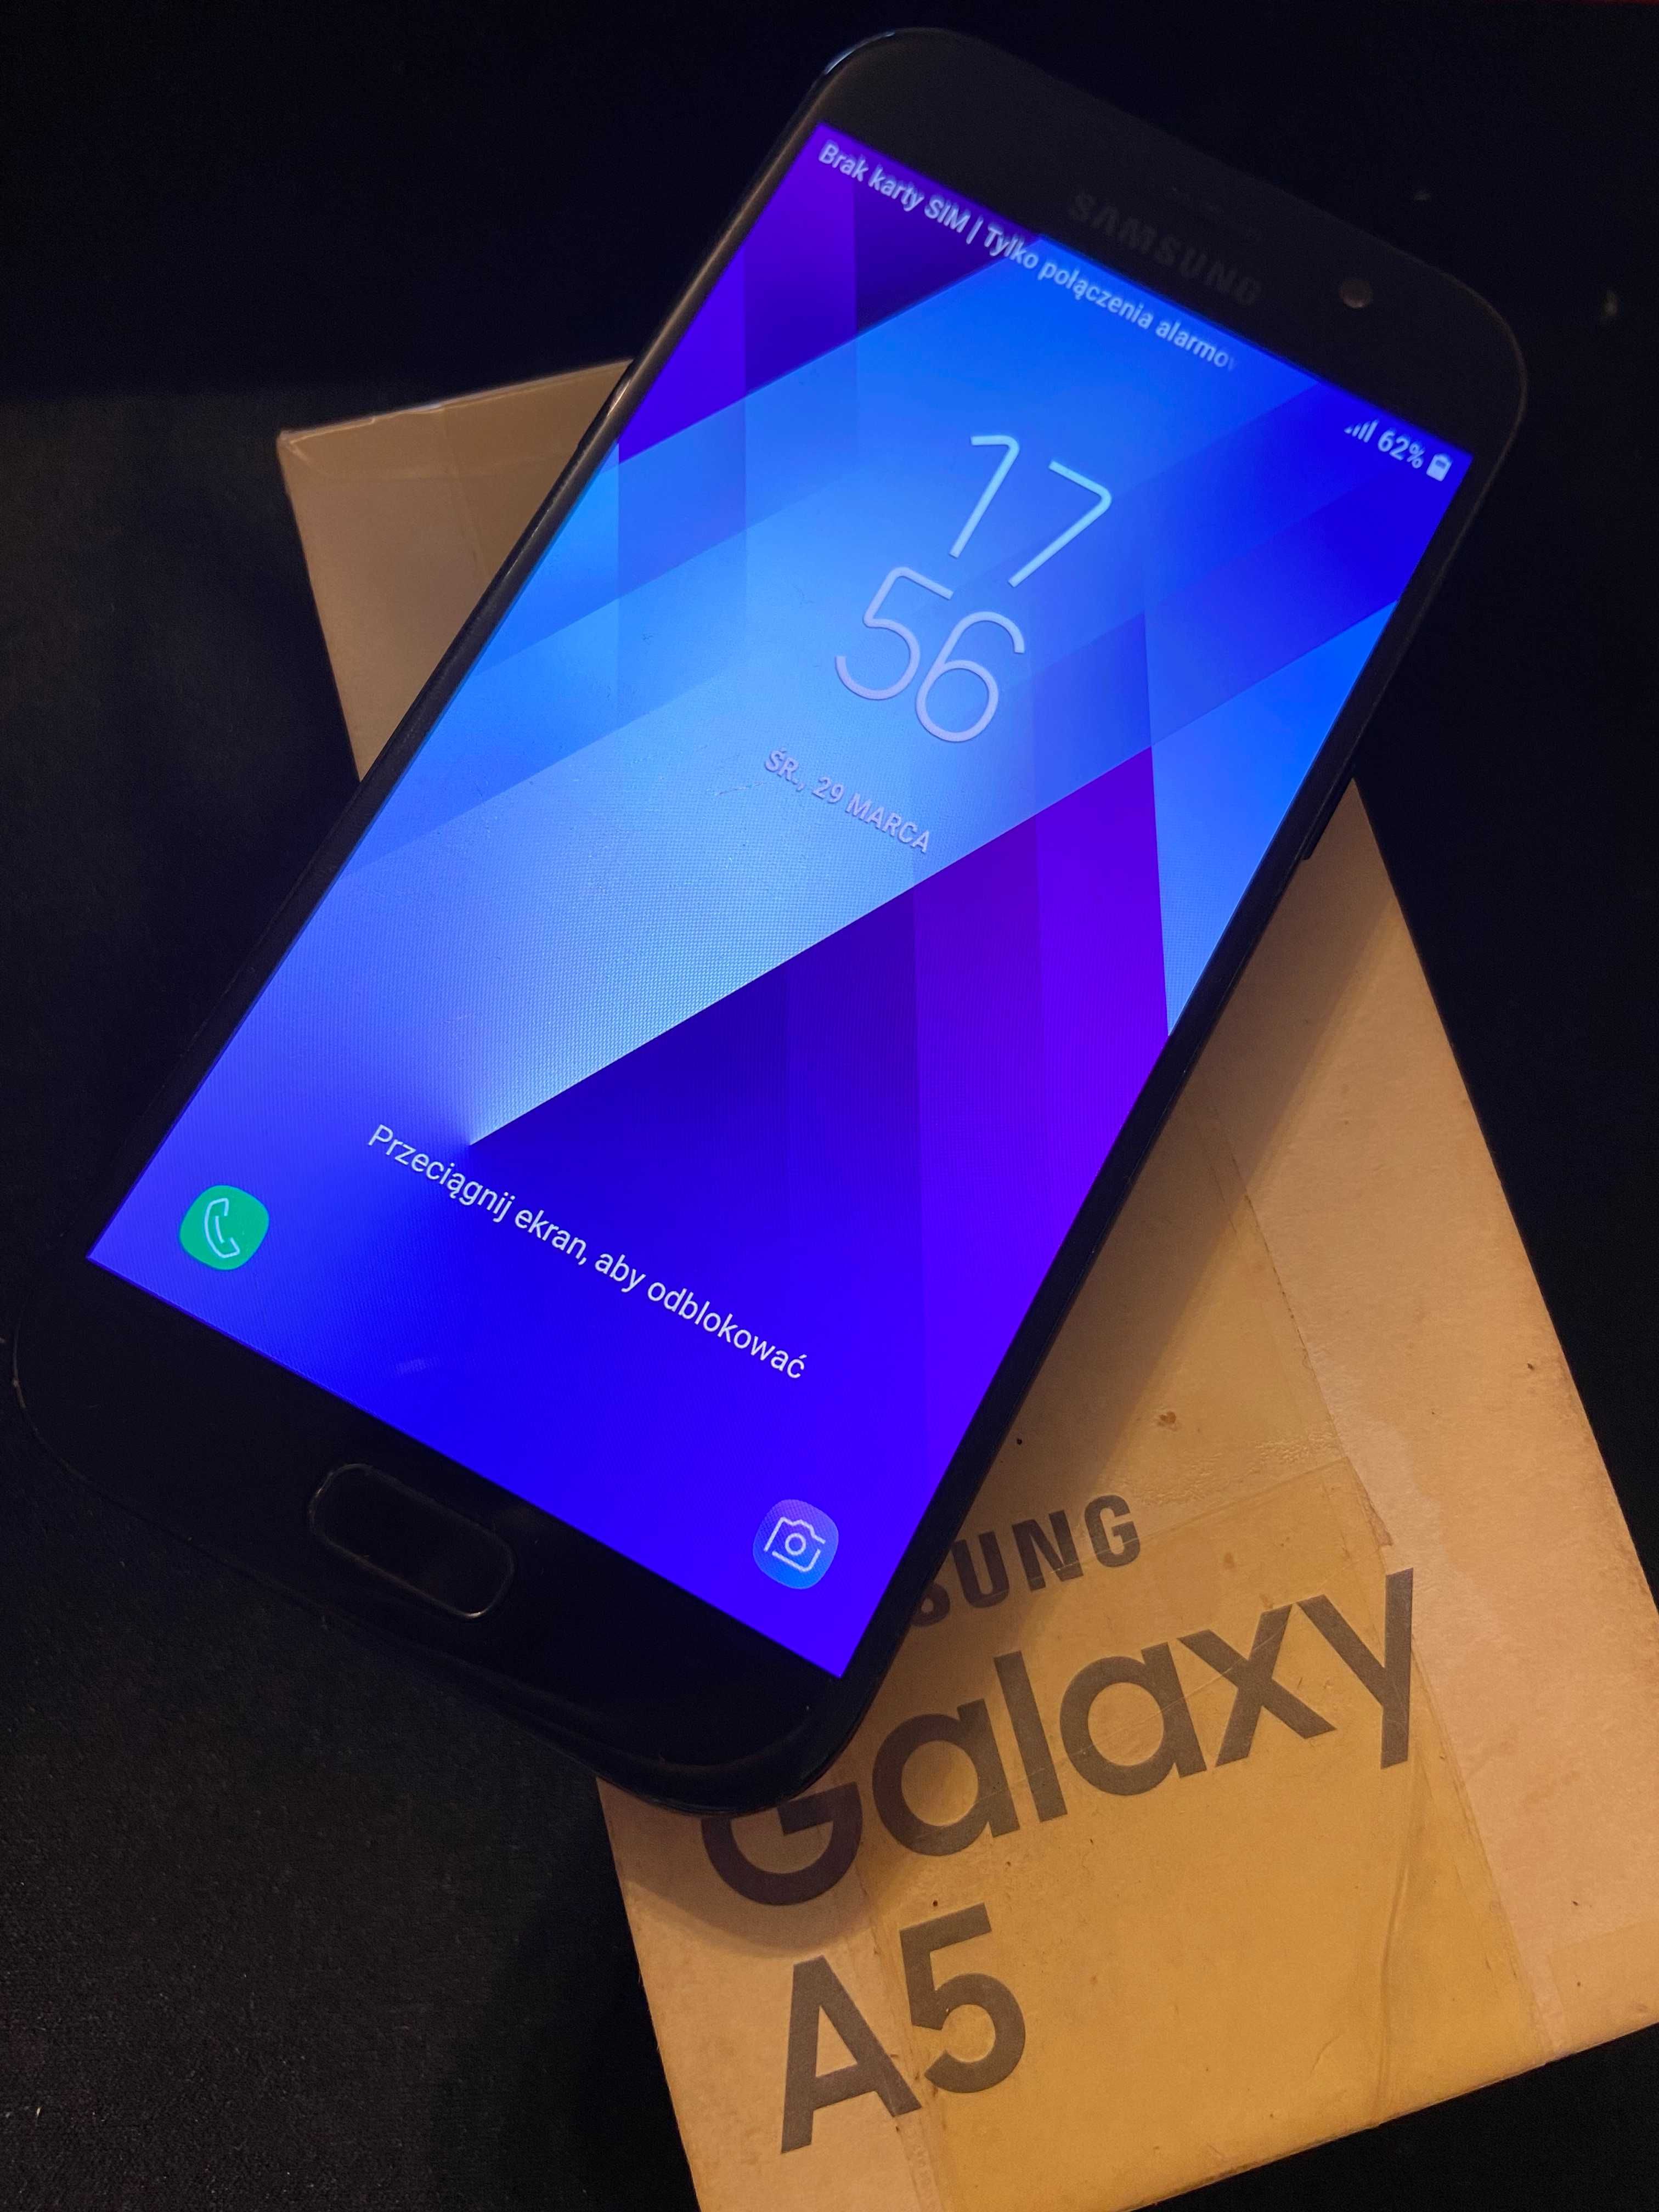 Samsung gaalxy a5 2017 3Gb ram ! amoled